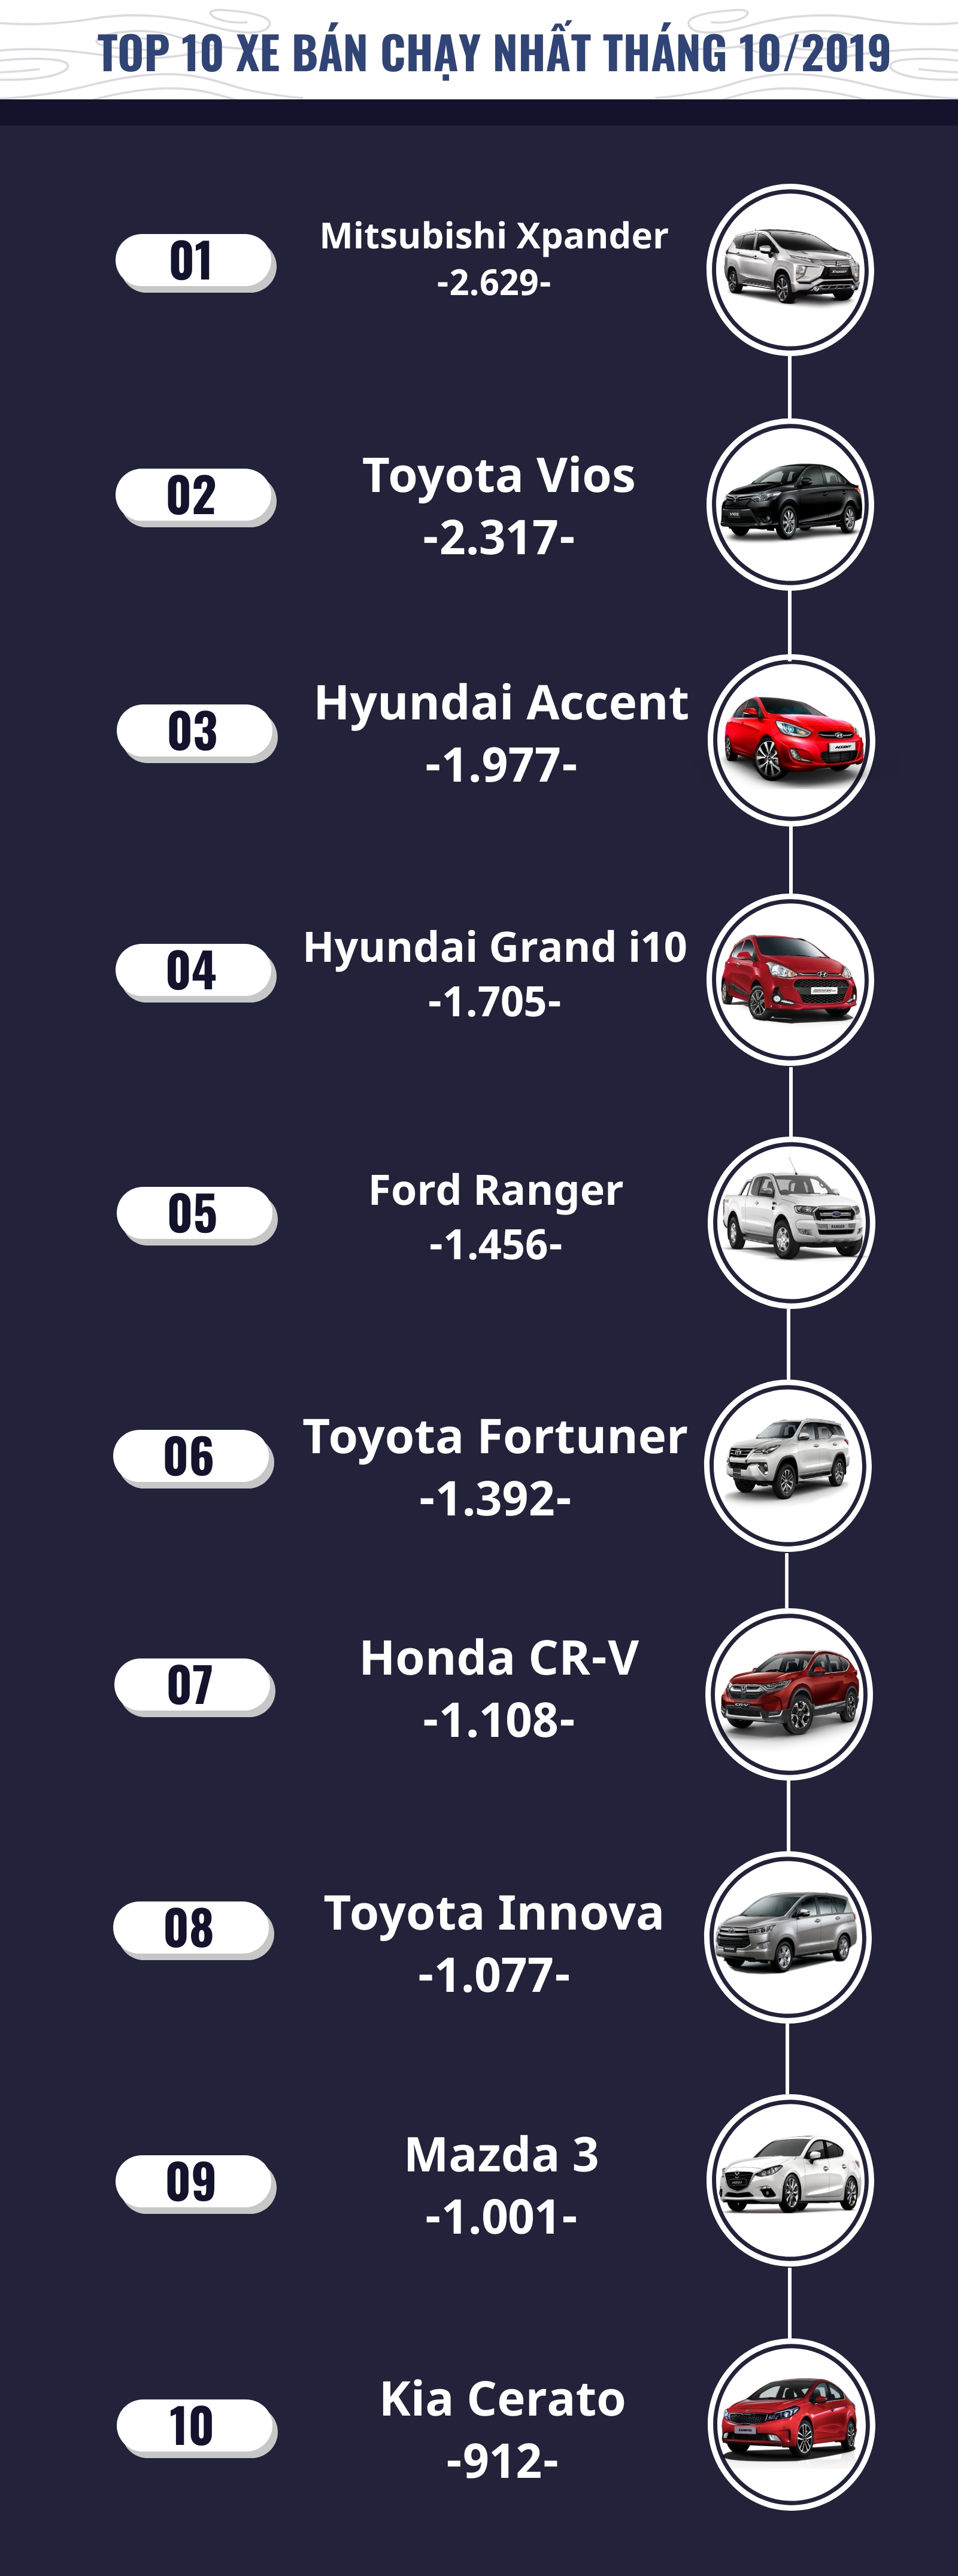 [Infographic] Top 10 xe bán chạy tháng 10/2019: Vios mất ngôi vương